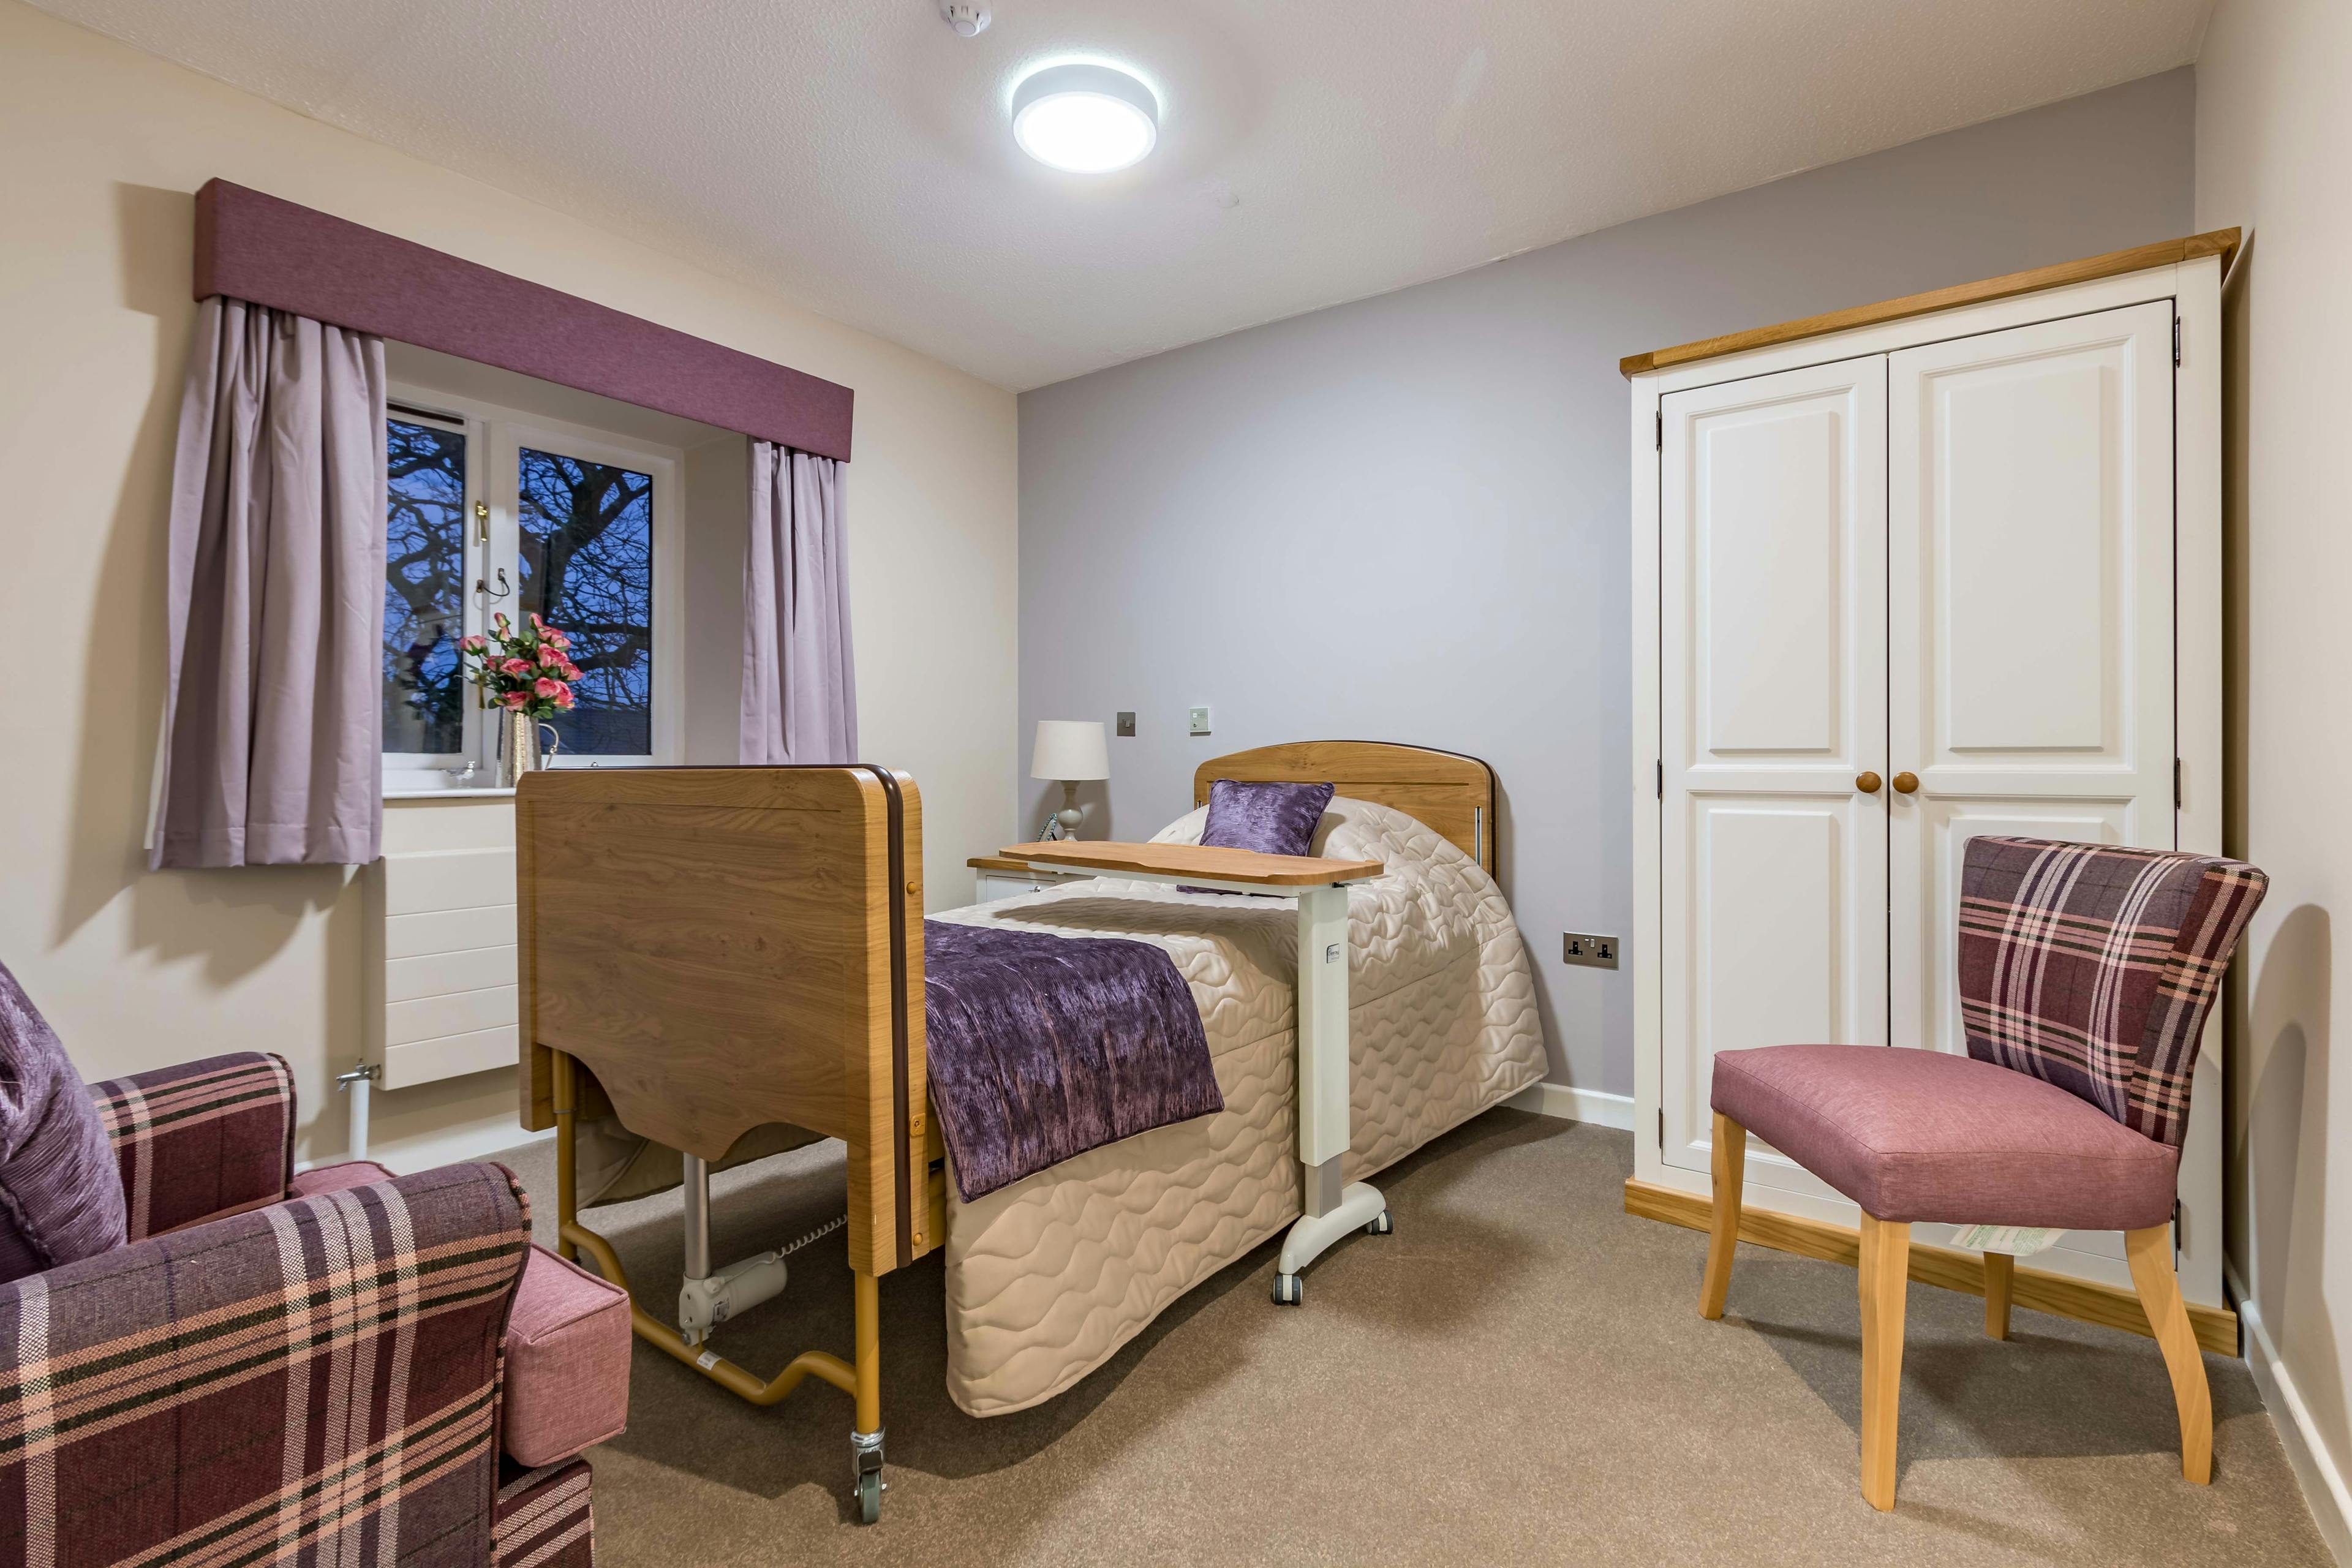 Bedroom at Llys-y-Tywysog Care Home Swansea, Wales